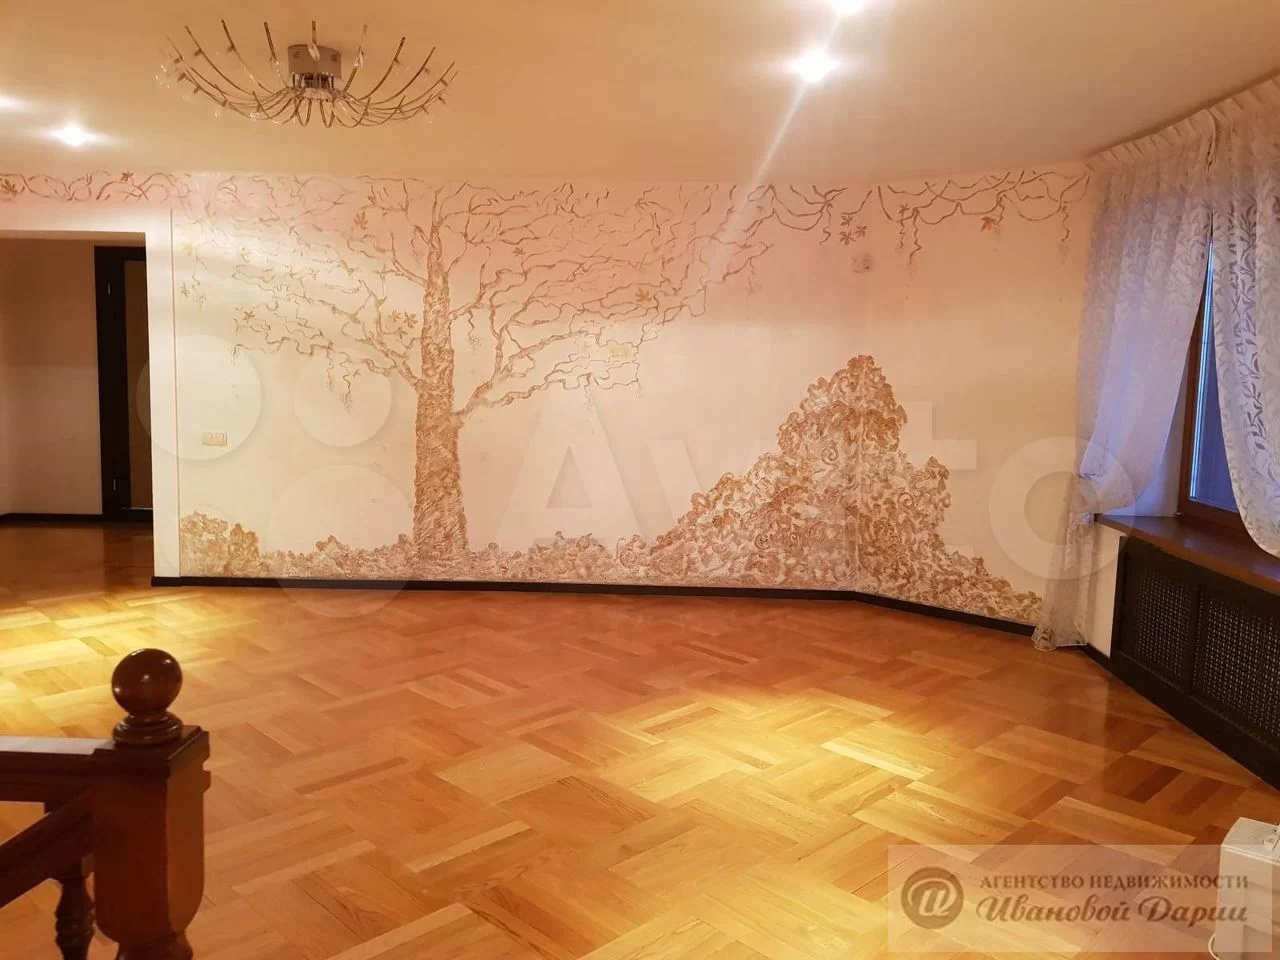 Одун из стен украсили изображением дерева